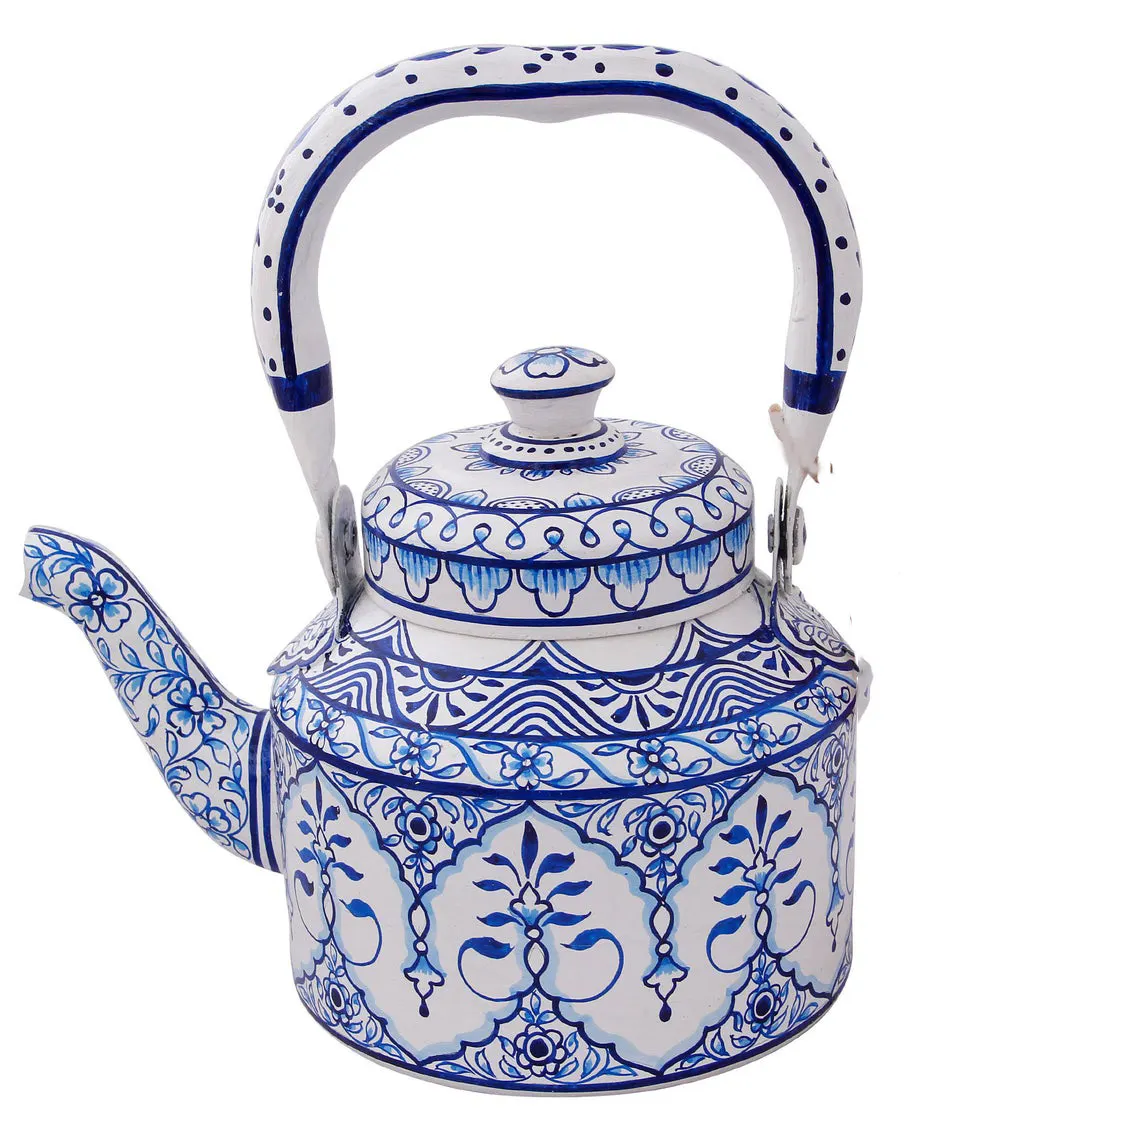 Chaleira de chá pintada à mão antiga, chaleira de chá tradicional de estilo indiano